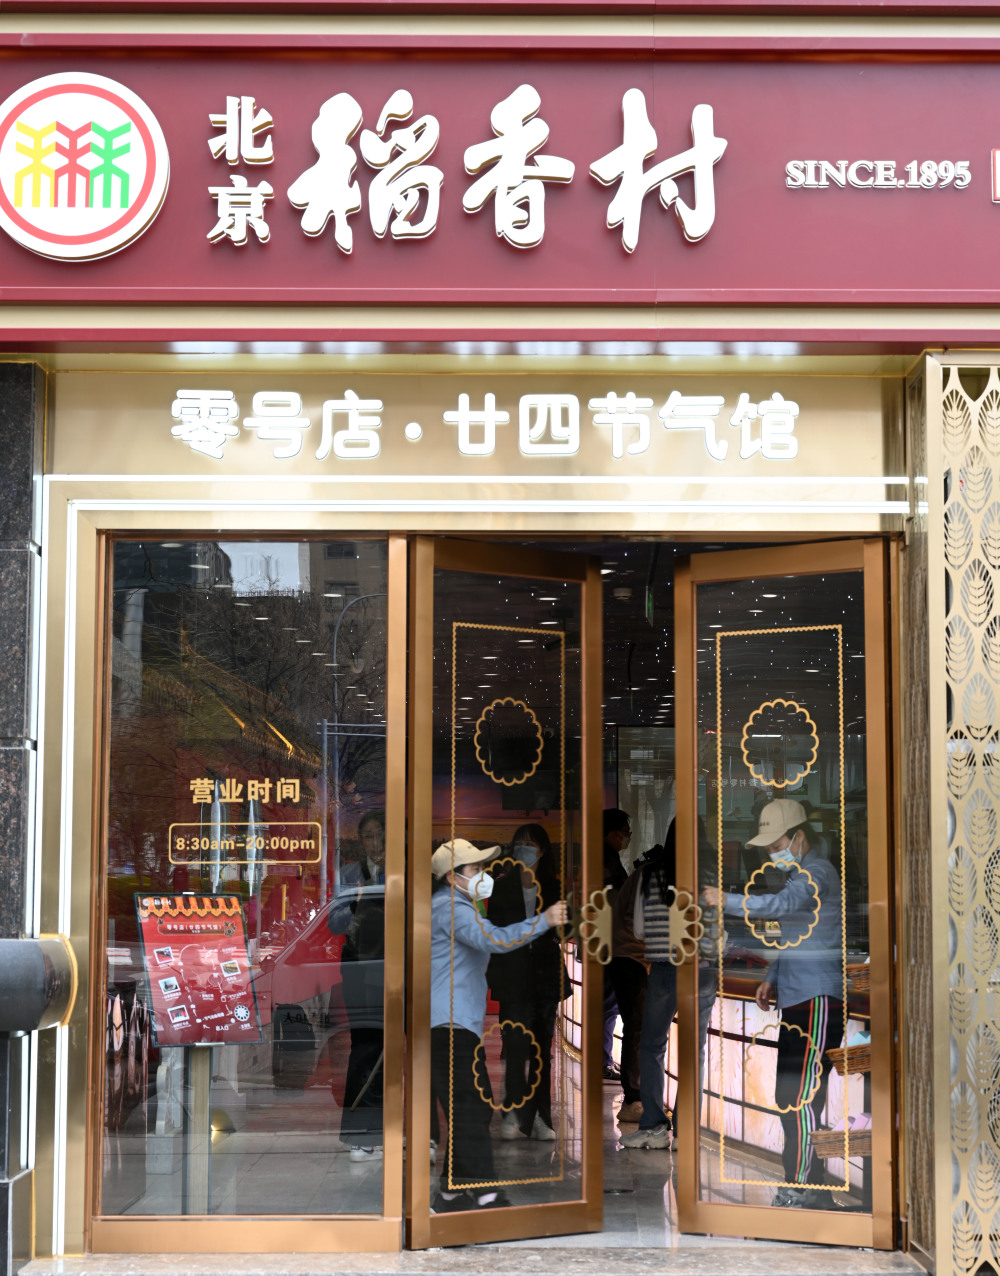 北京稻香村店面图片